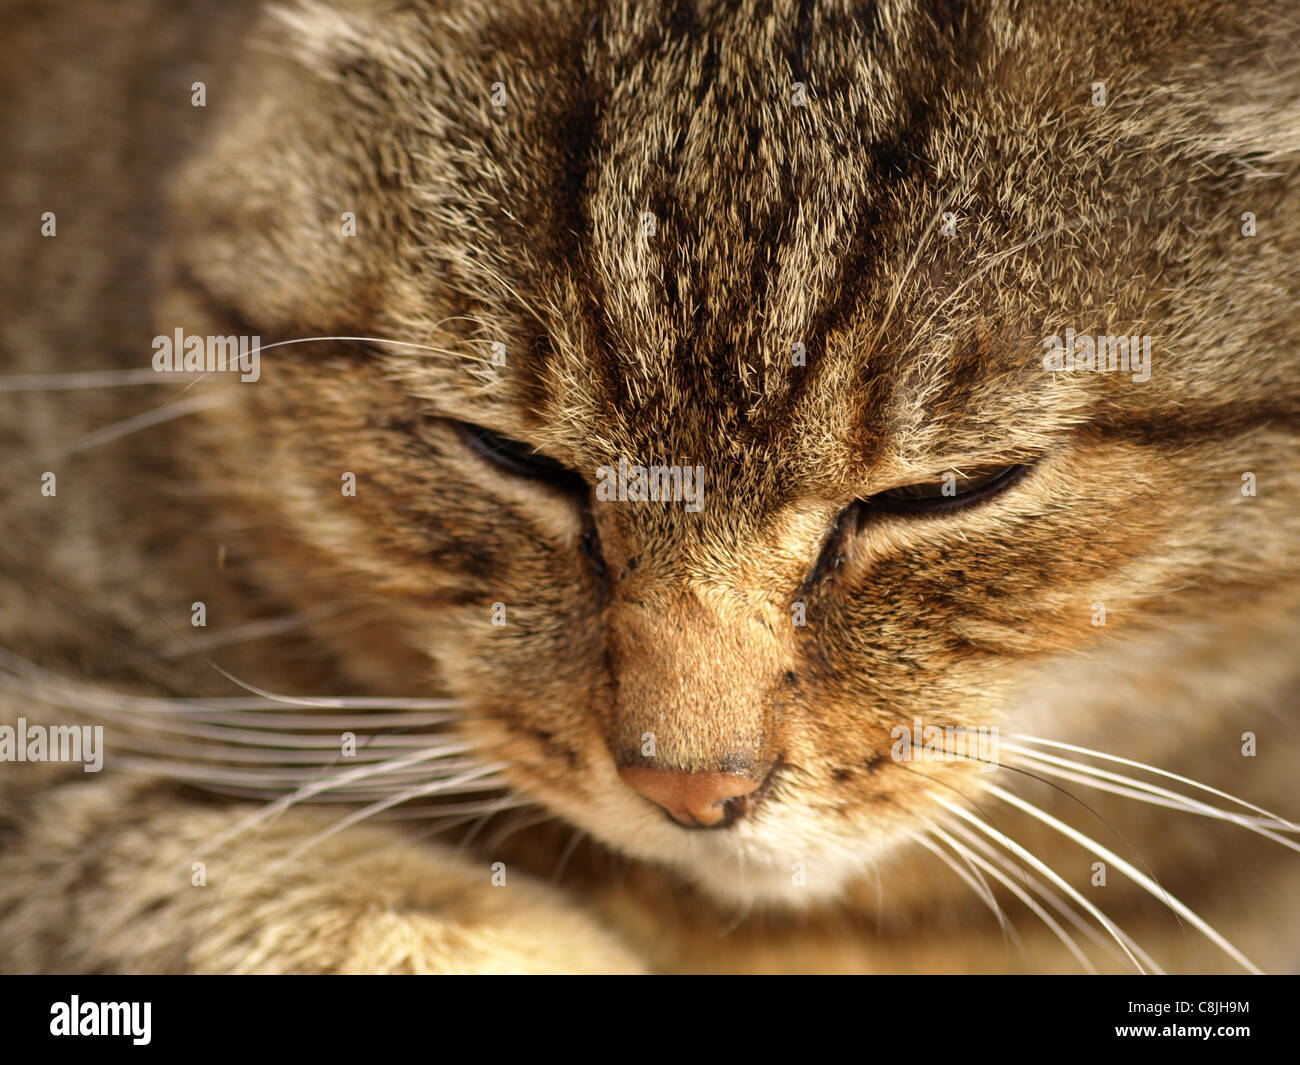 Retrato de un gato montés europeo / Felis silvestris / Europäische Wildkatze Foto de stock